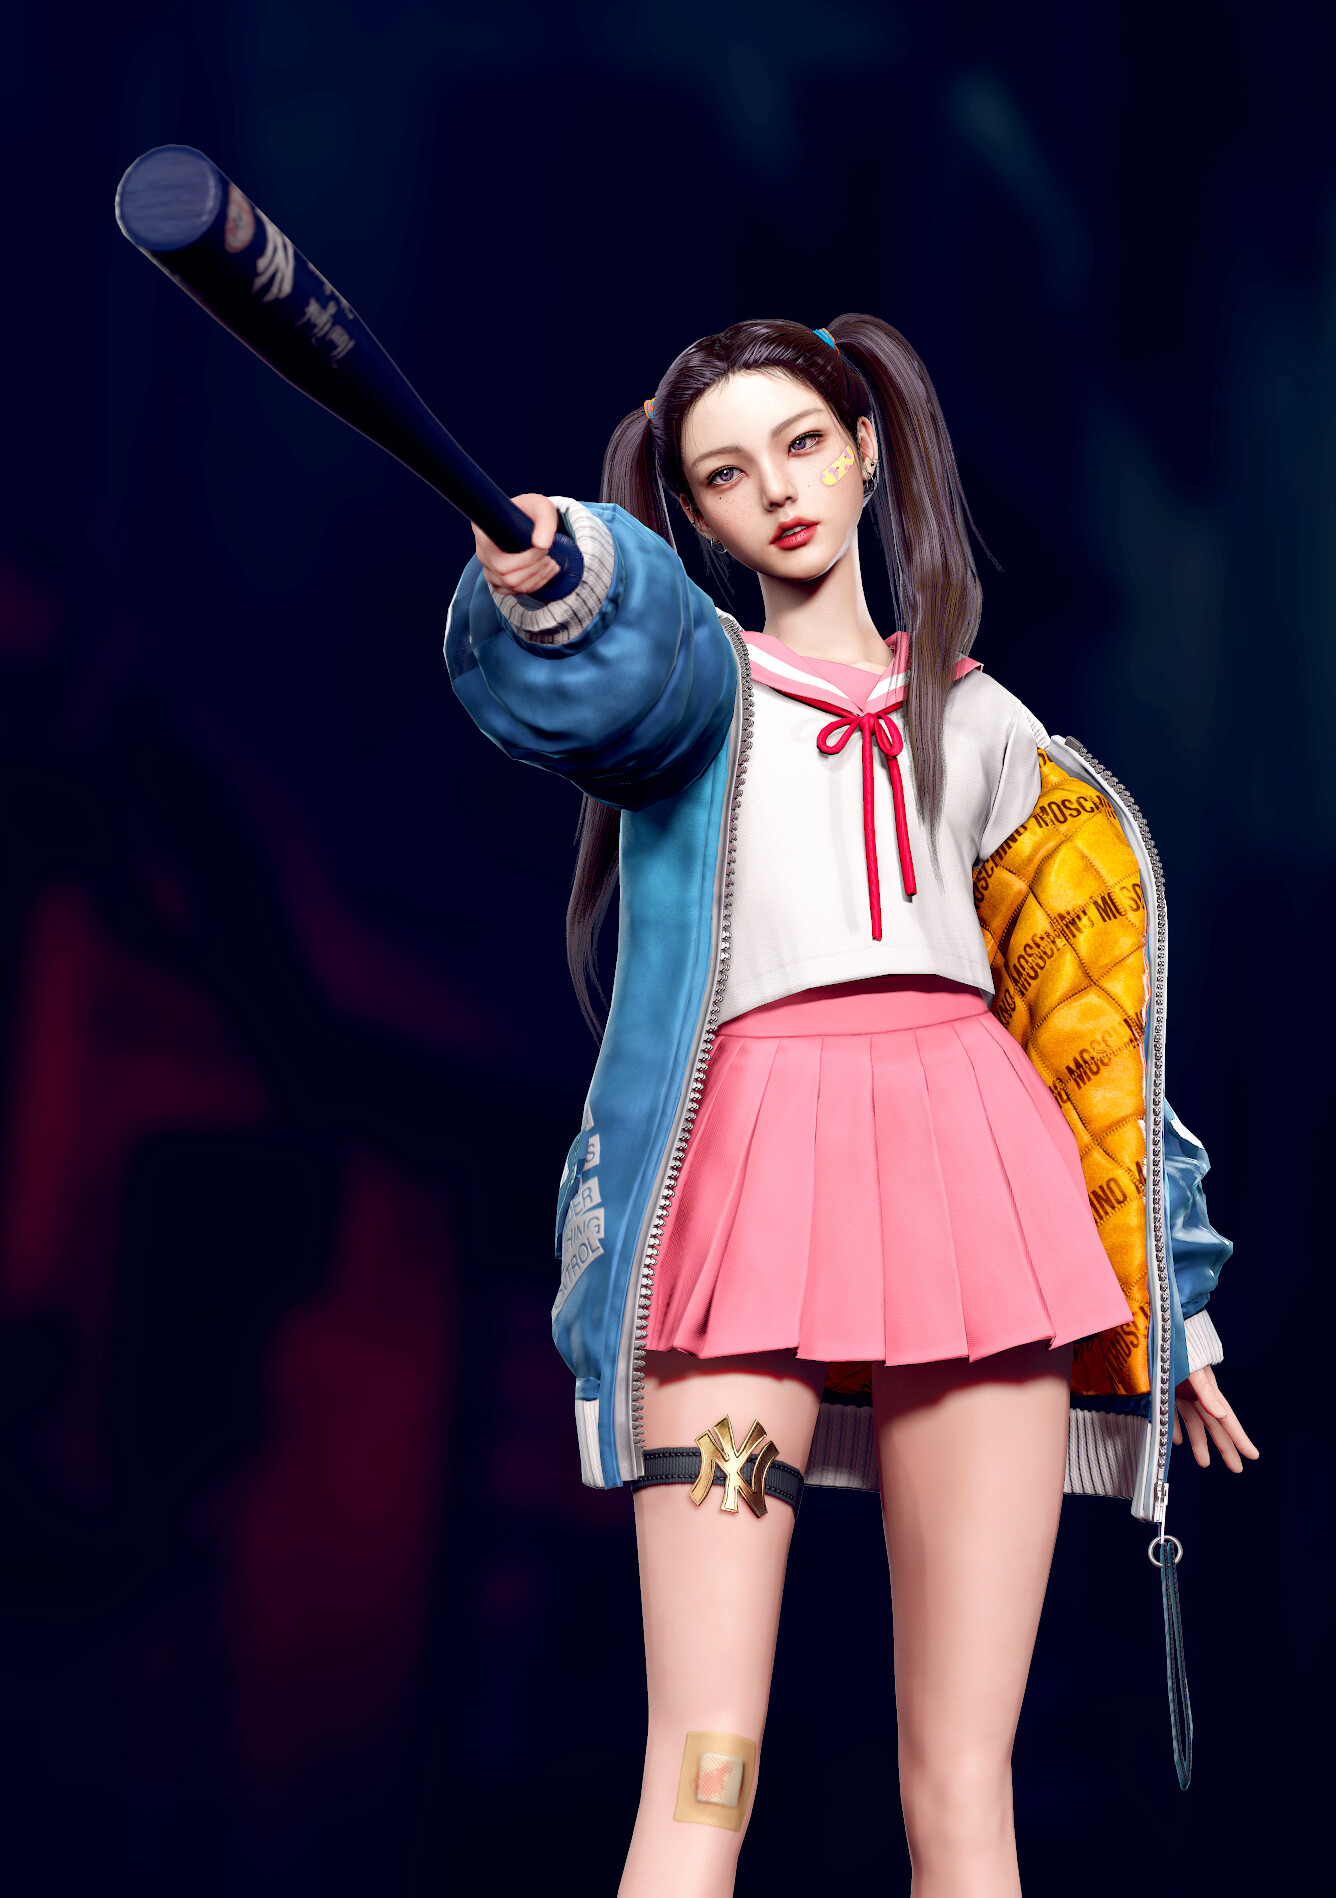 Eunji Lee Women CGi Pink Skirt JK Looking At The Side Ponytail Asian 1336x1898